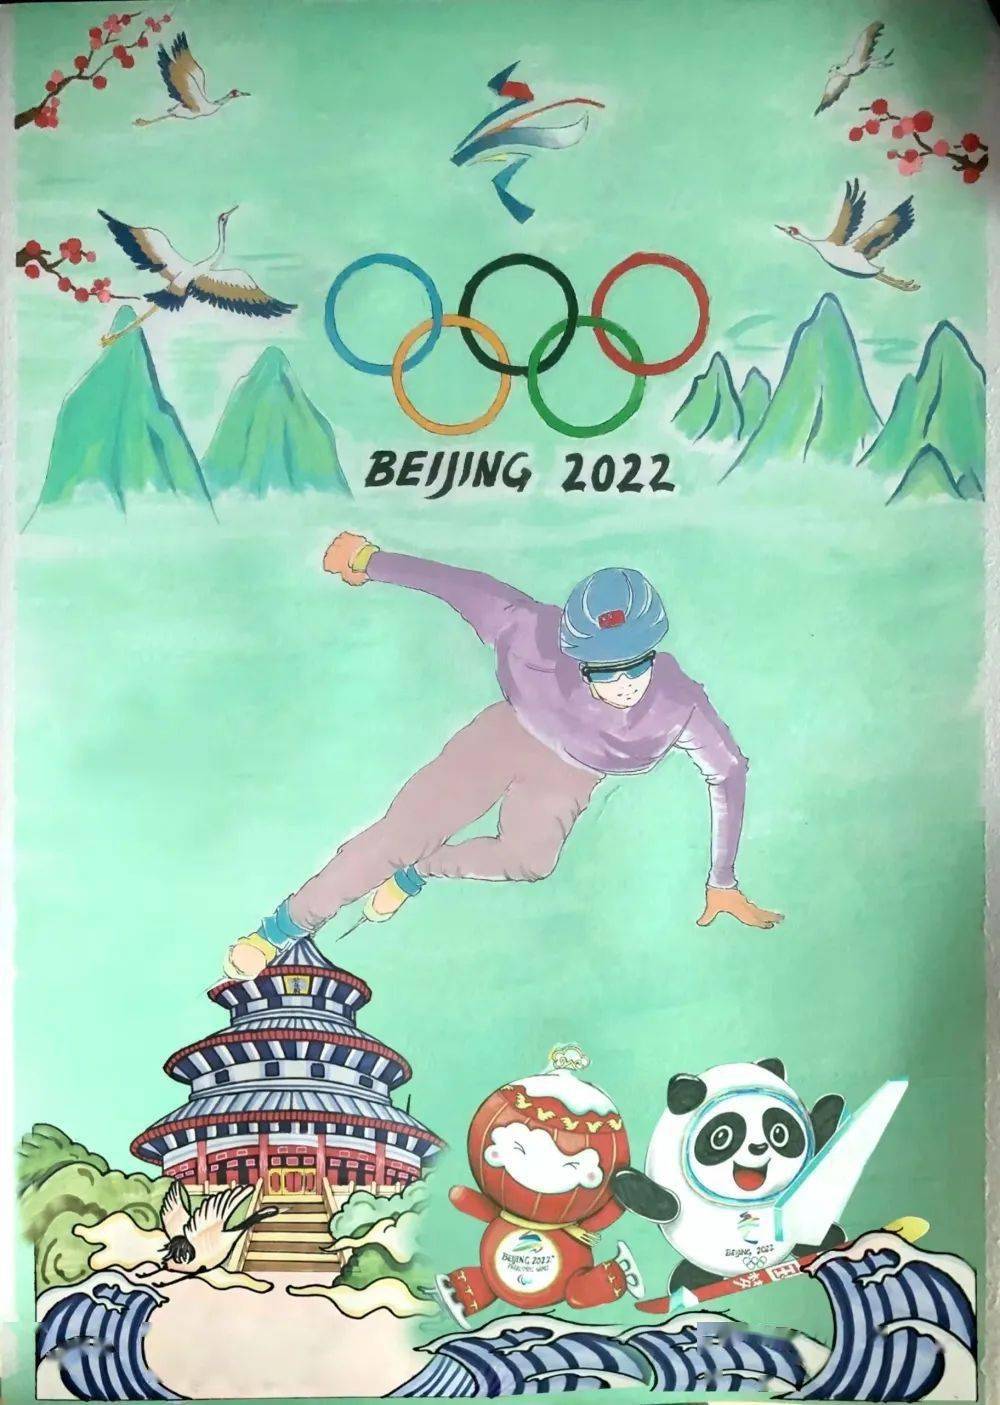 赵萃萃教师组第24届冬季奥林匹克运动会即将在北京开幕,为喜迎冬奥会